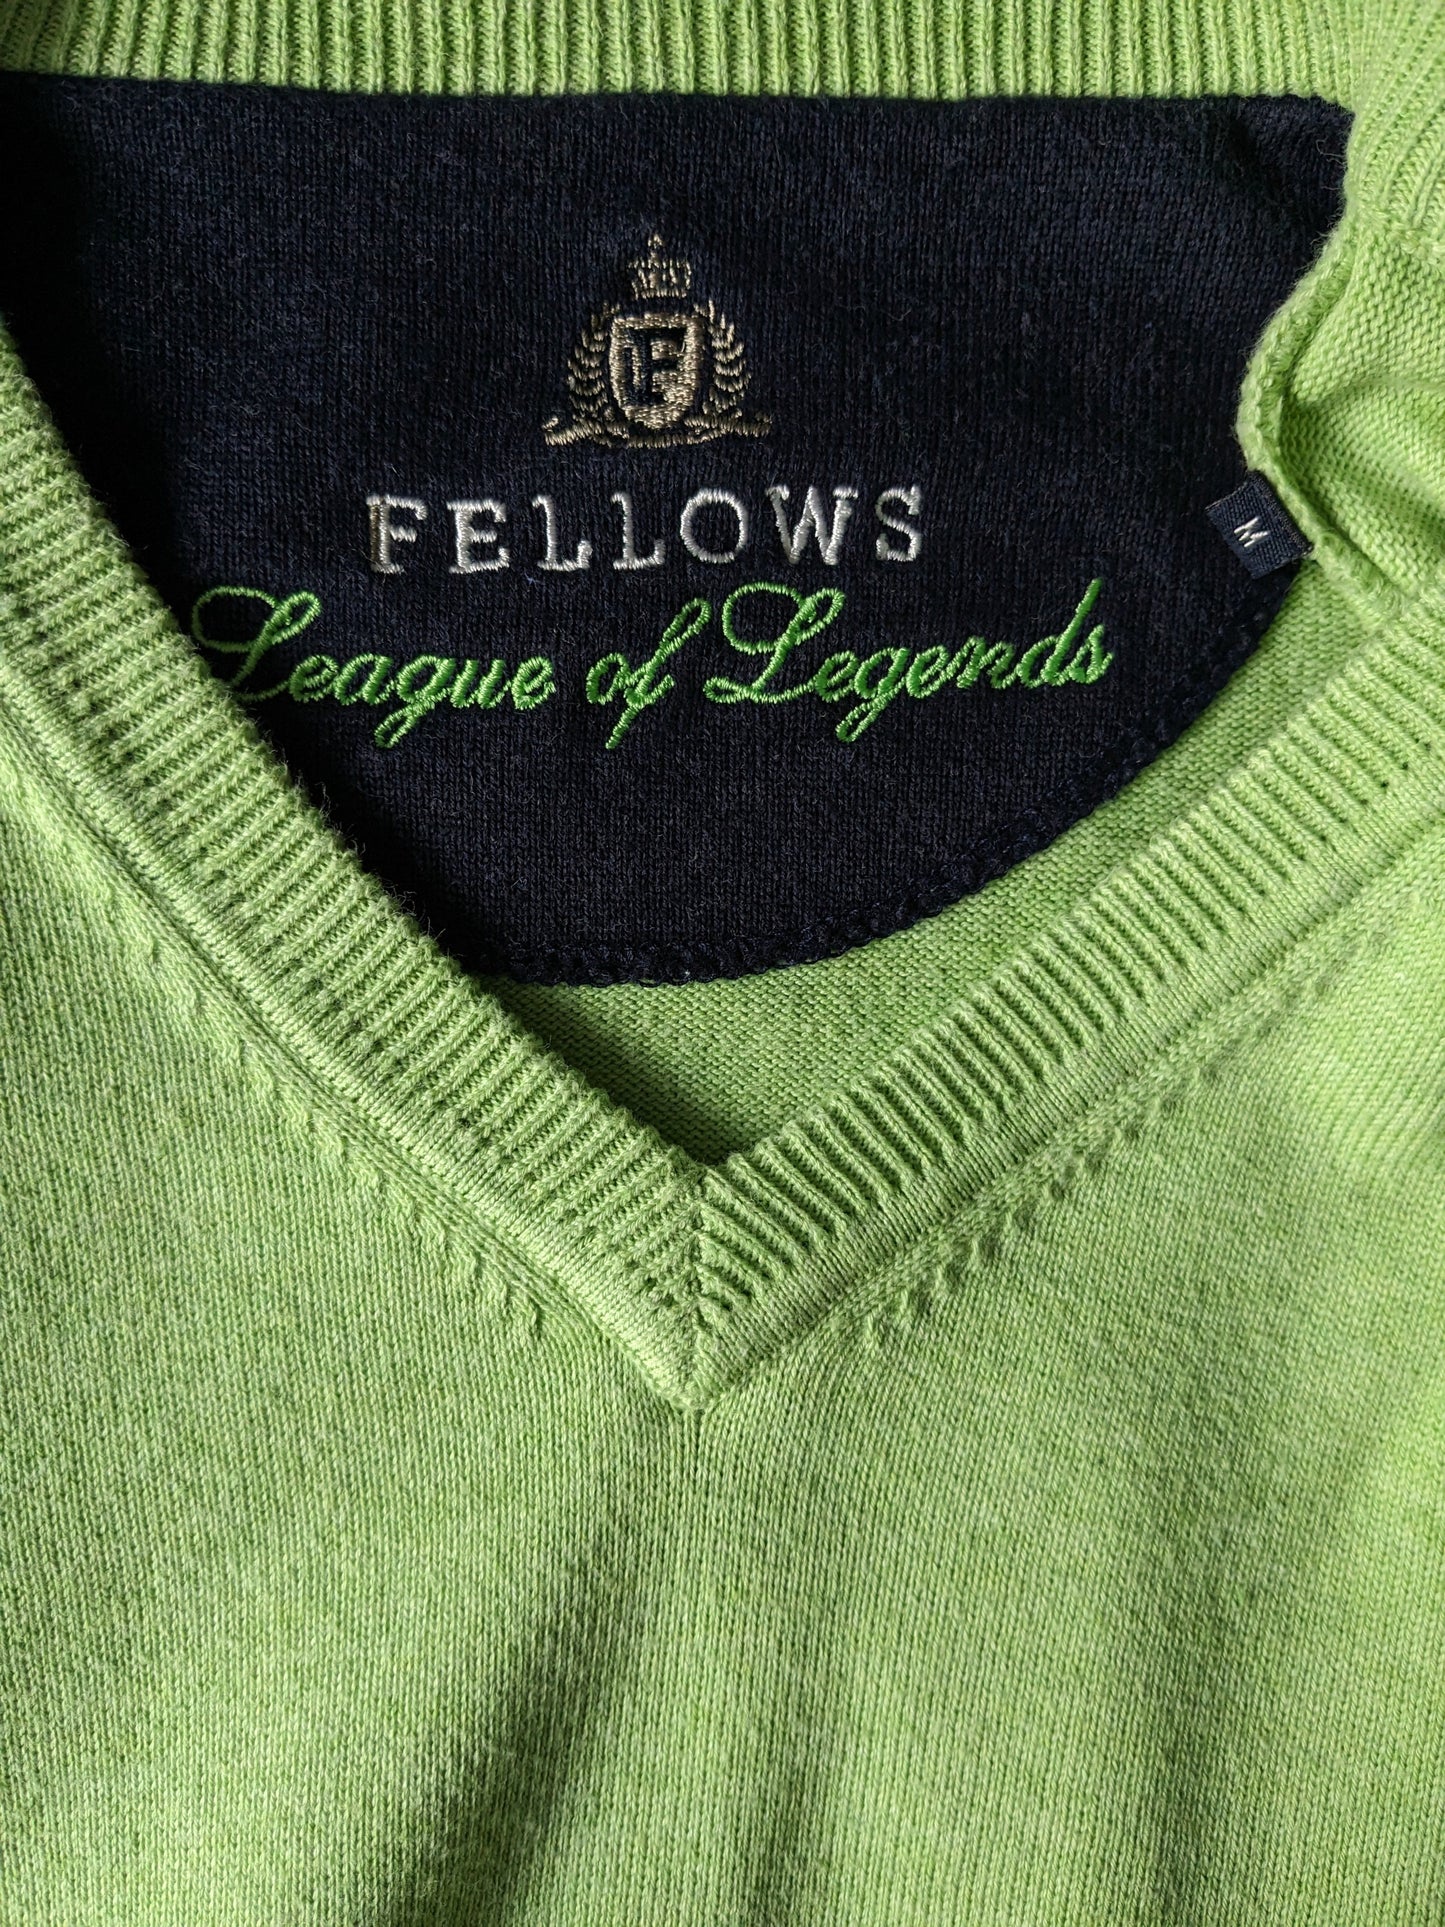 Fellows League of Legends V-Neck-Pullover. Grün. Größe M.